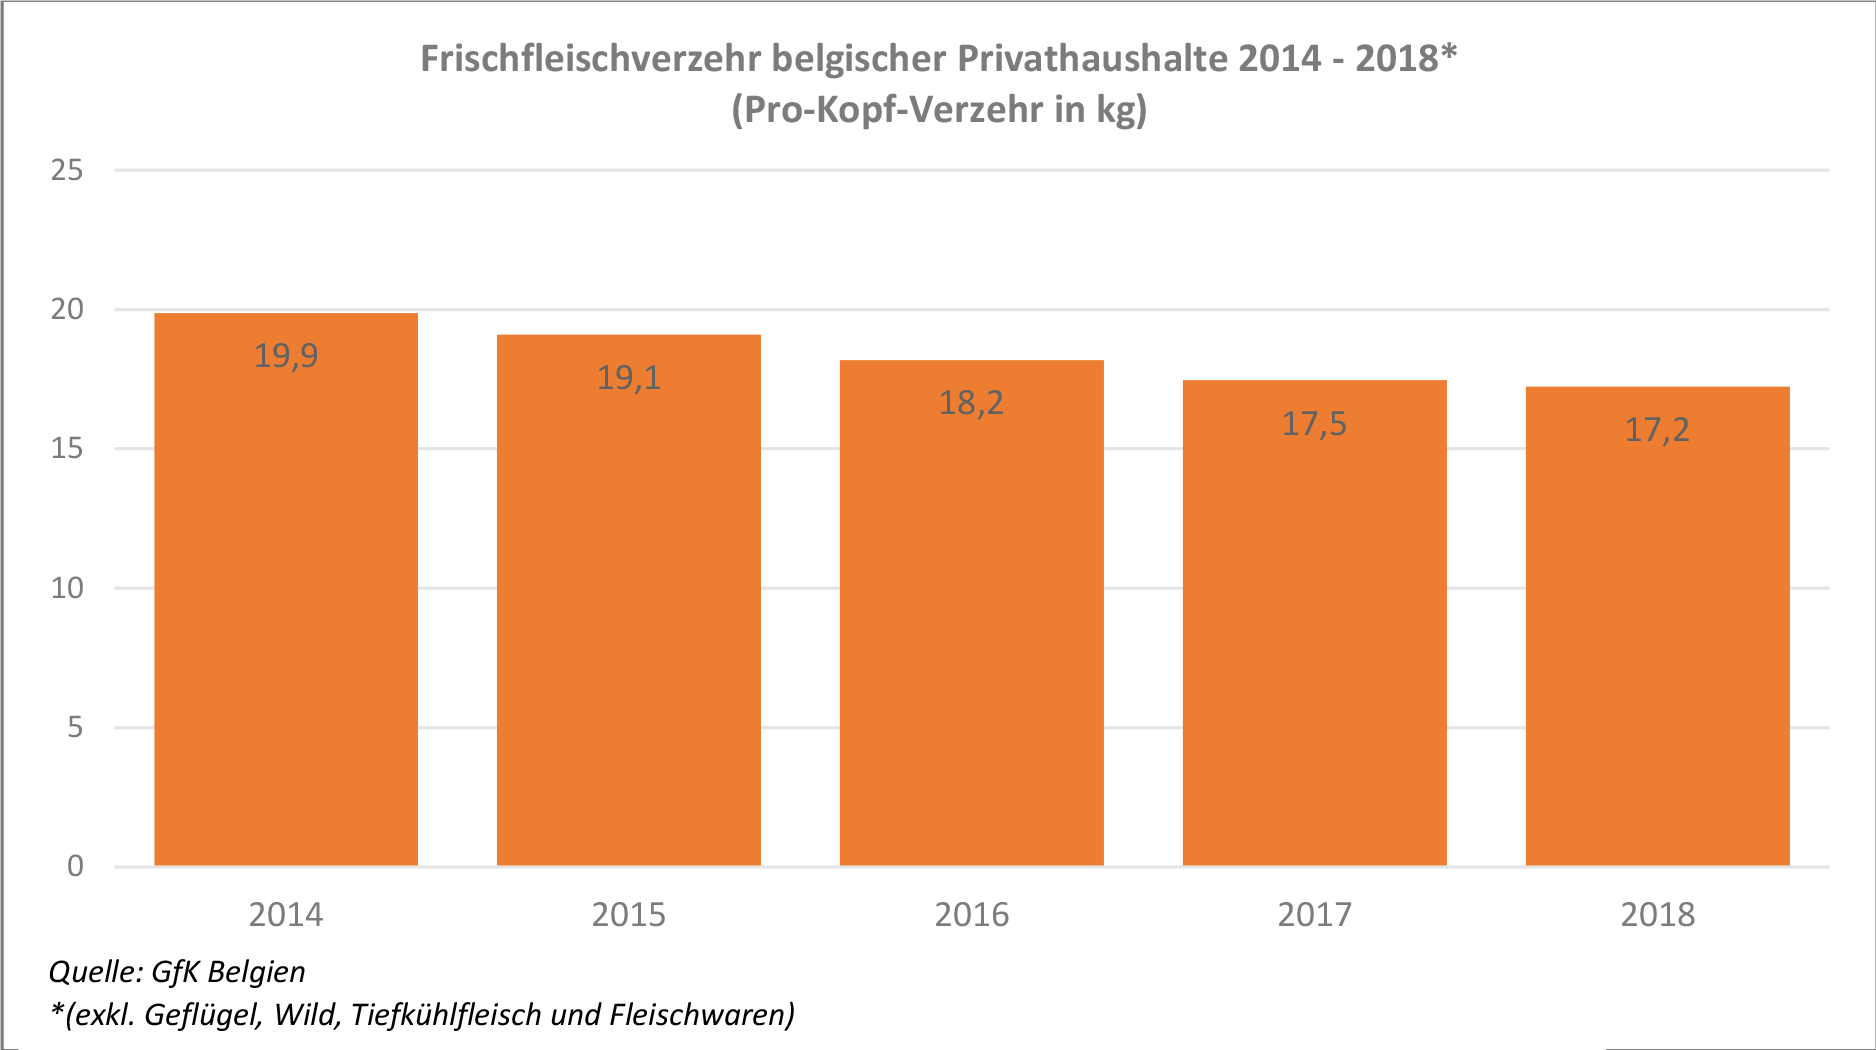 Consumo de carne fresca_belgischer_private_households_2014_-_2018.jpg